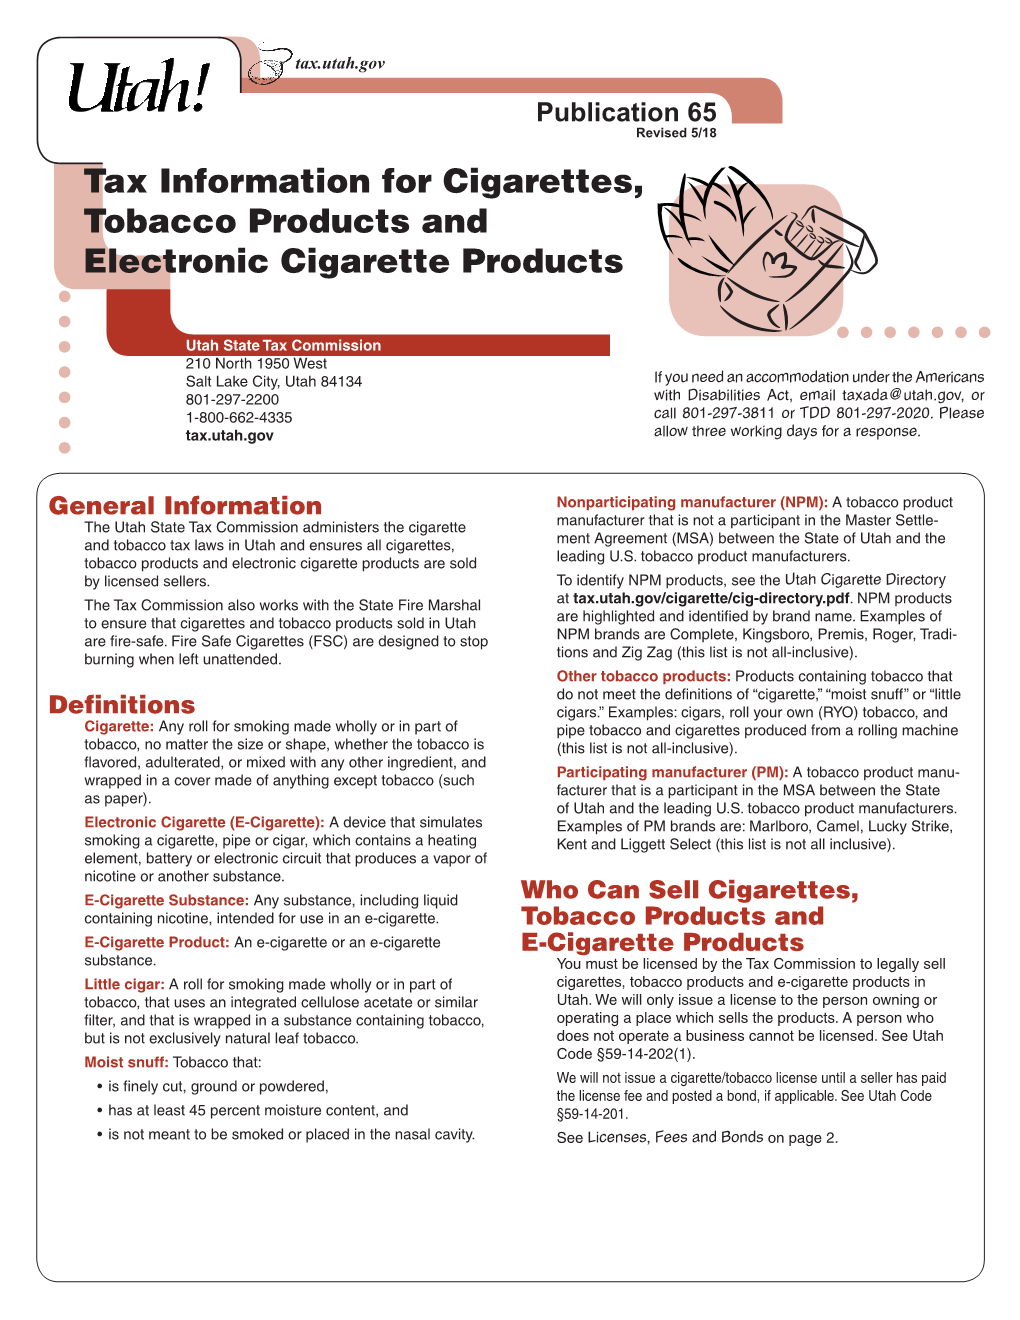 Pub-65, Utah Tax Info for Cigarettes, Tobacco Products & E-Cigarette